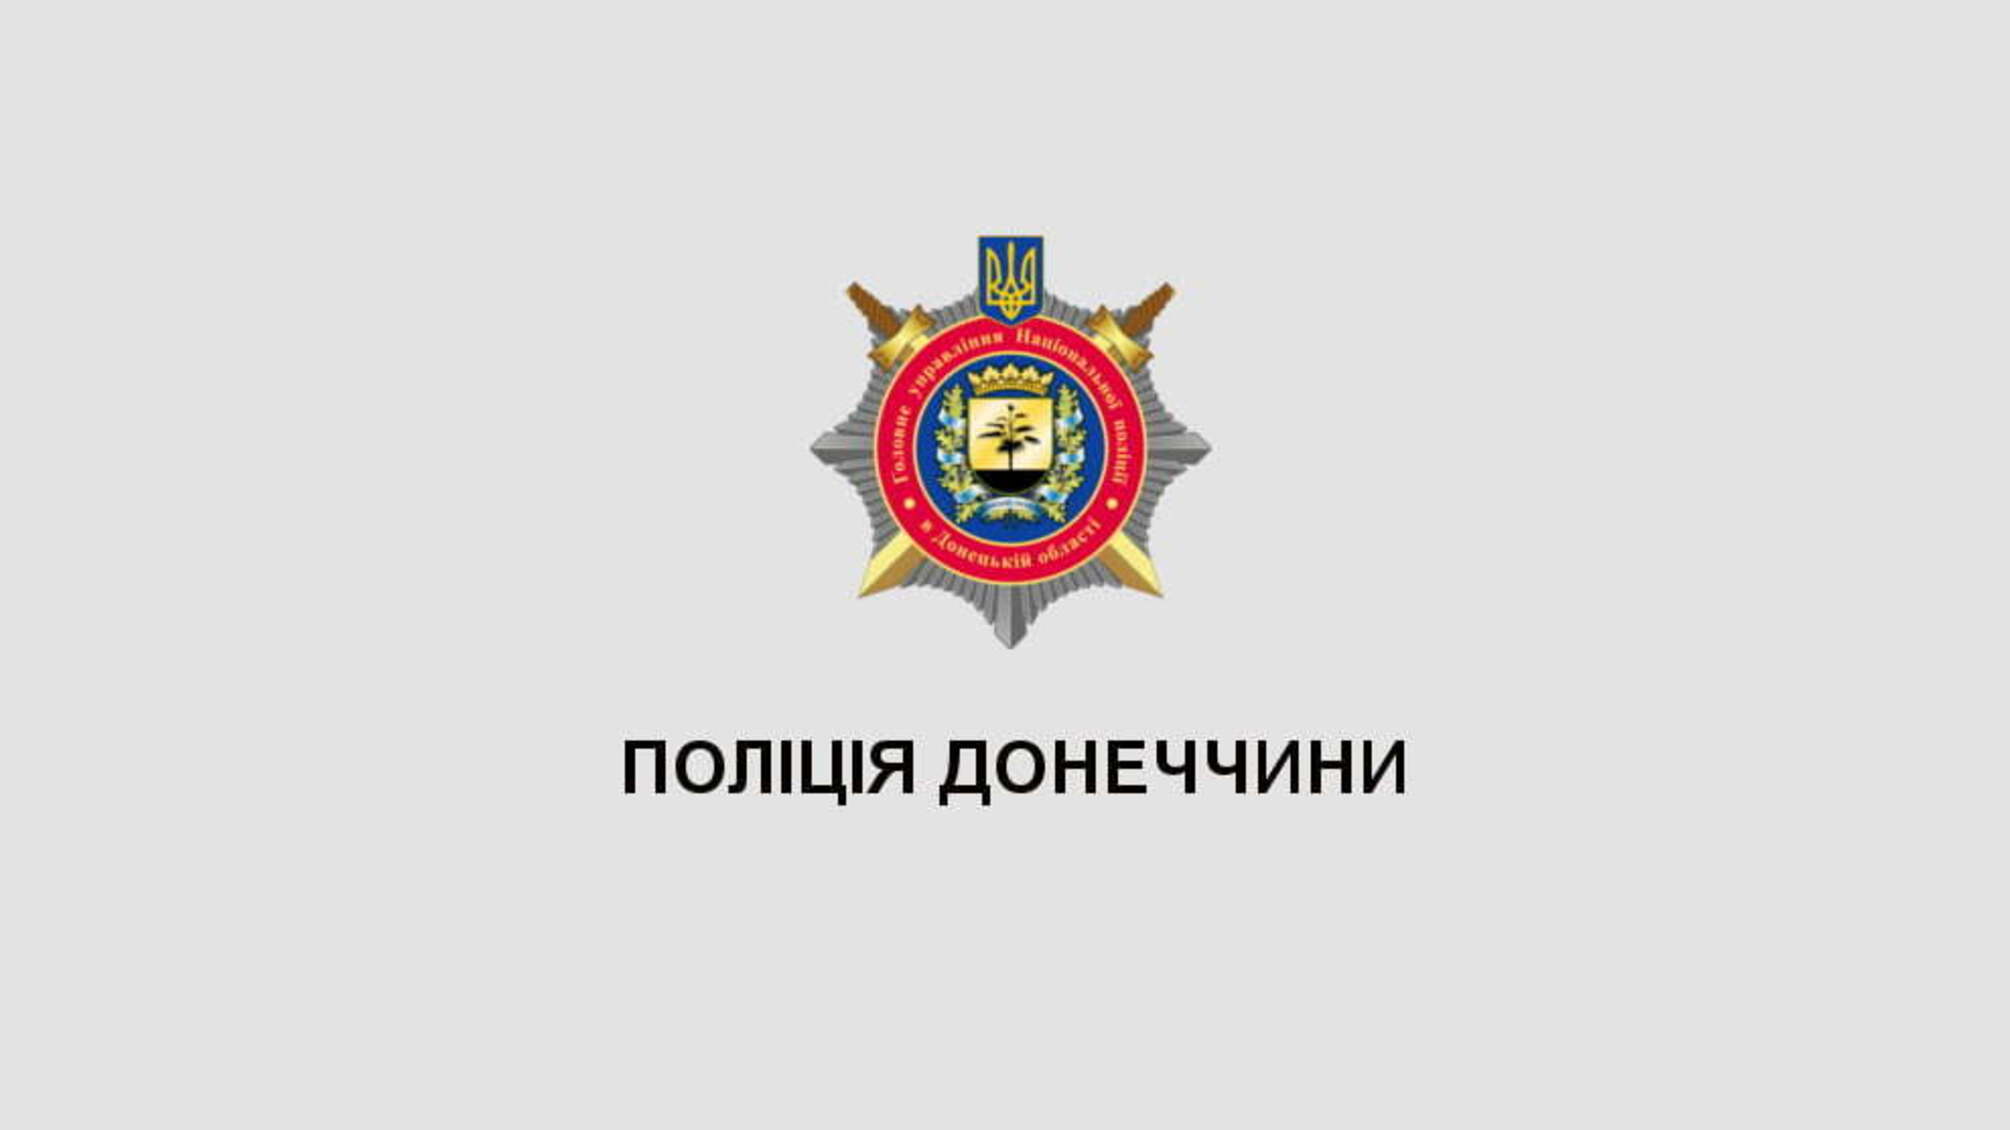 Поліцейські поділилися досвідом із учасниками міжнародної конференції в Донецькому державному університеті внутрішніх справ